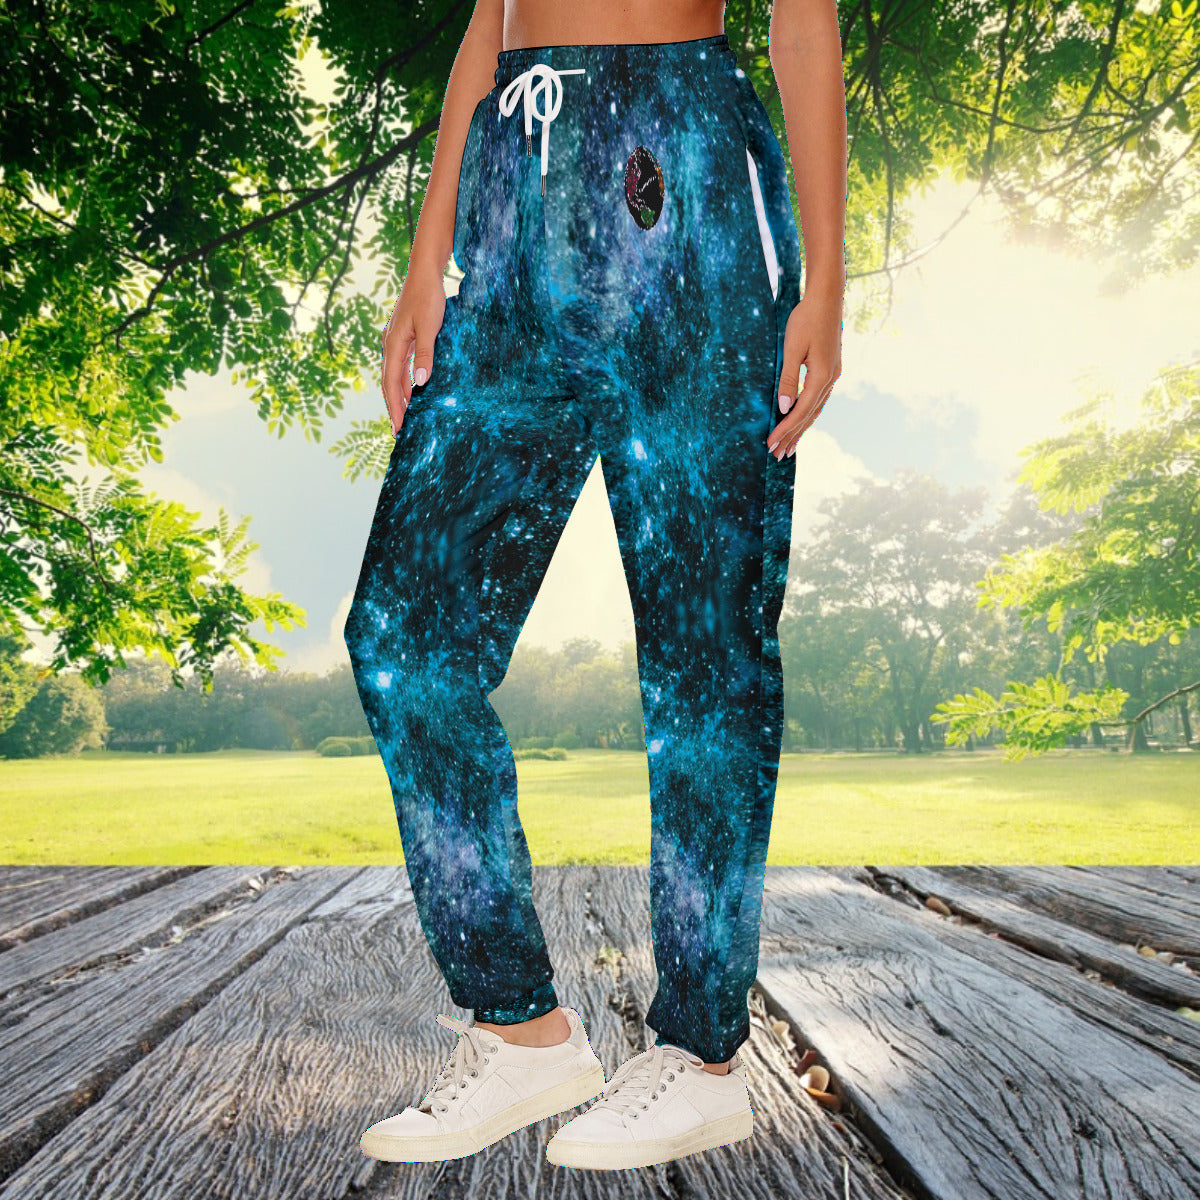 My Journey Galaxy Space Nebula Women's Fashion Casual Pants - The Nebula Palace